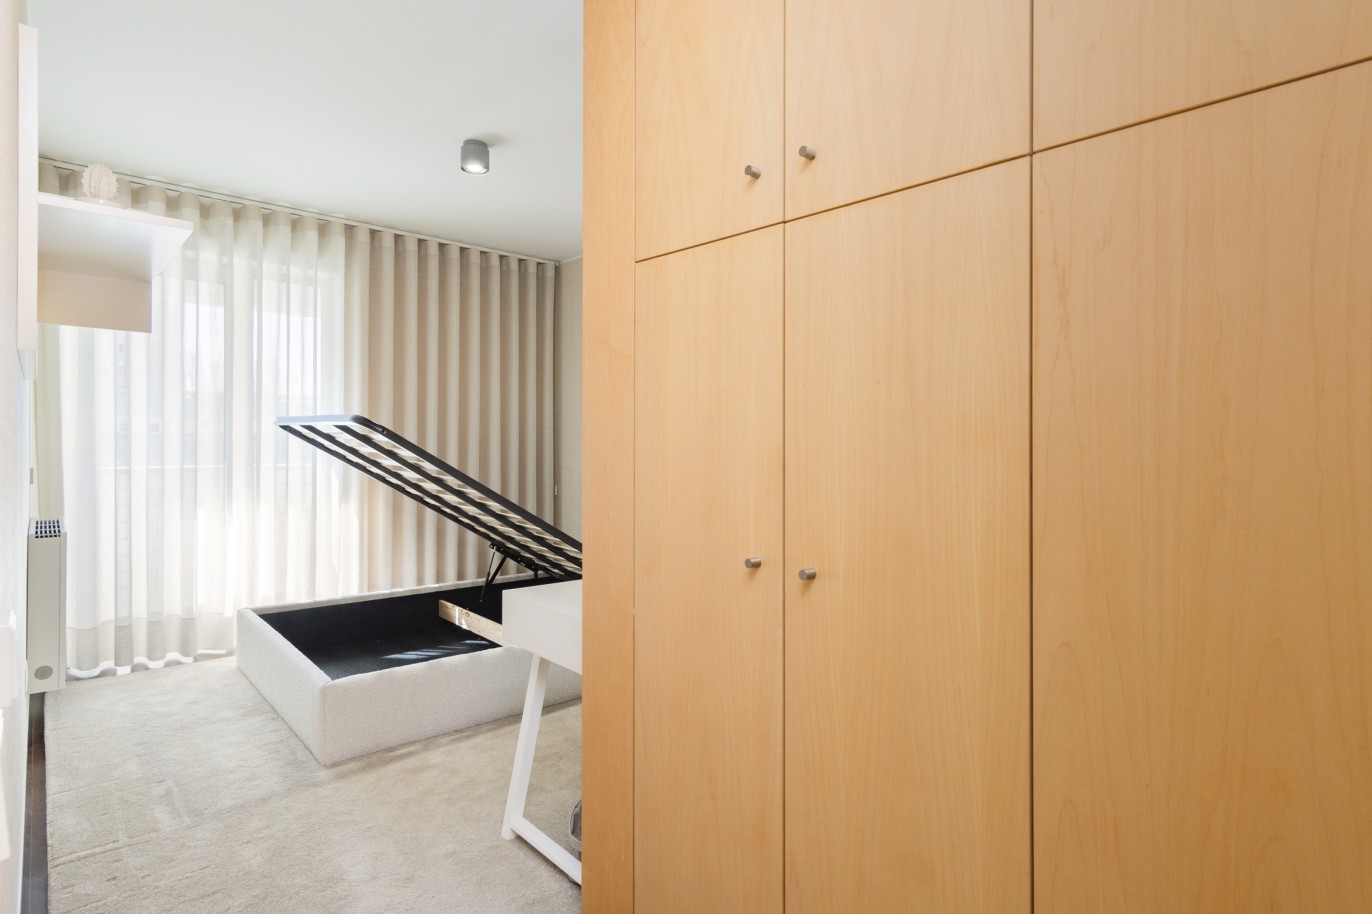 3 Bedroom Duplex Apartment with balcony, for sale, in Boavista, Porto, Portugal_217710